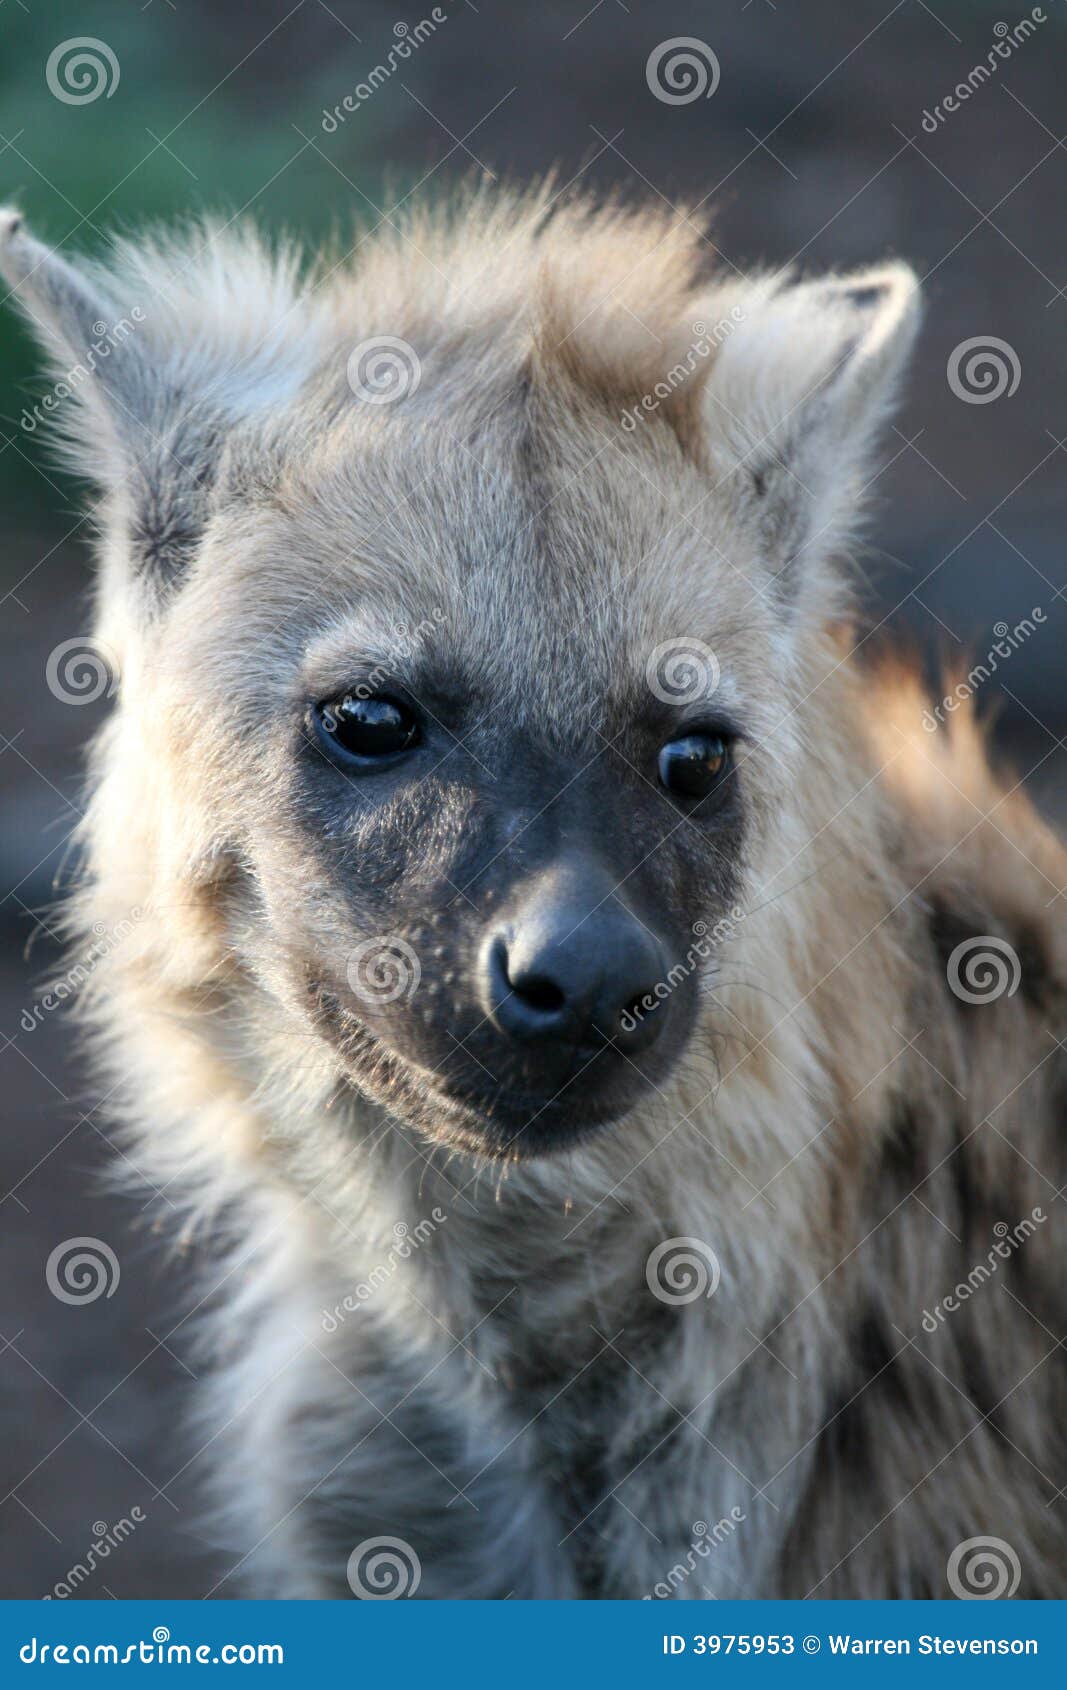 发现的鬣狗(斑鬣狗斑鬣狗)婴孩 库存图片. 图片 包括有 小狗, 察觉, 食肉动物, 幼崽, 年轻, 森林 - 50870127